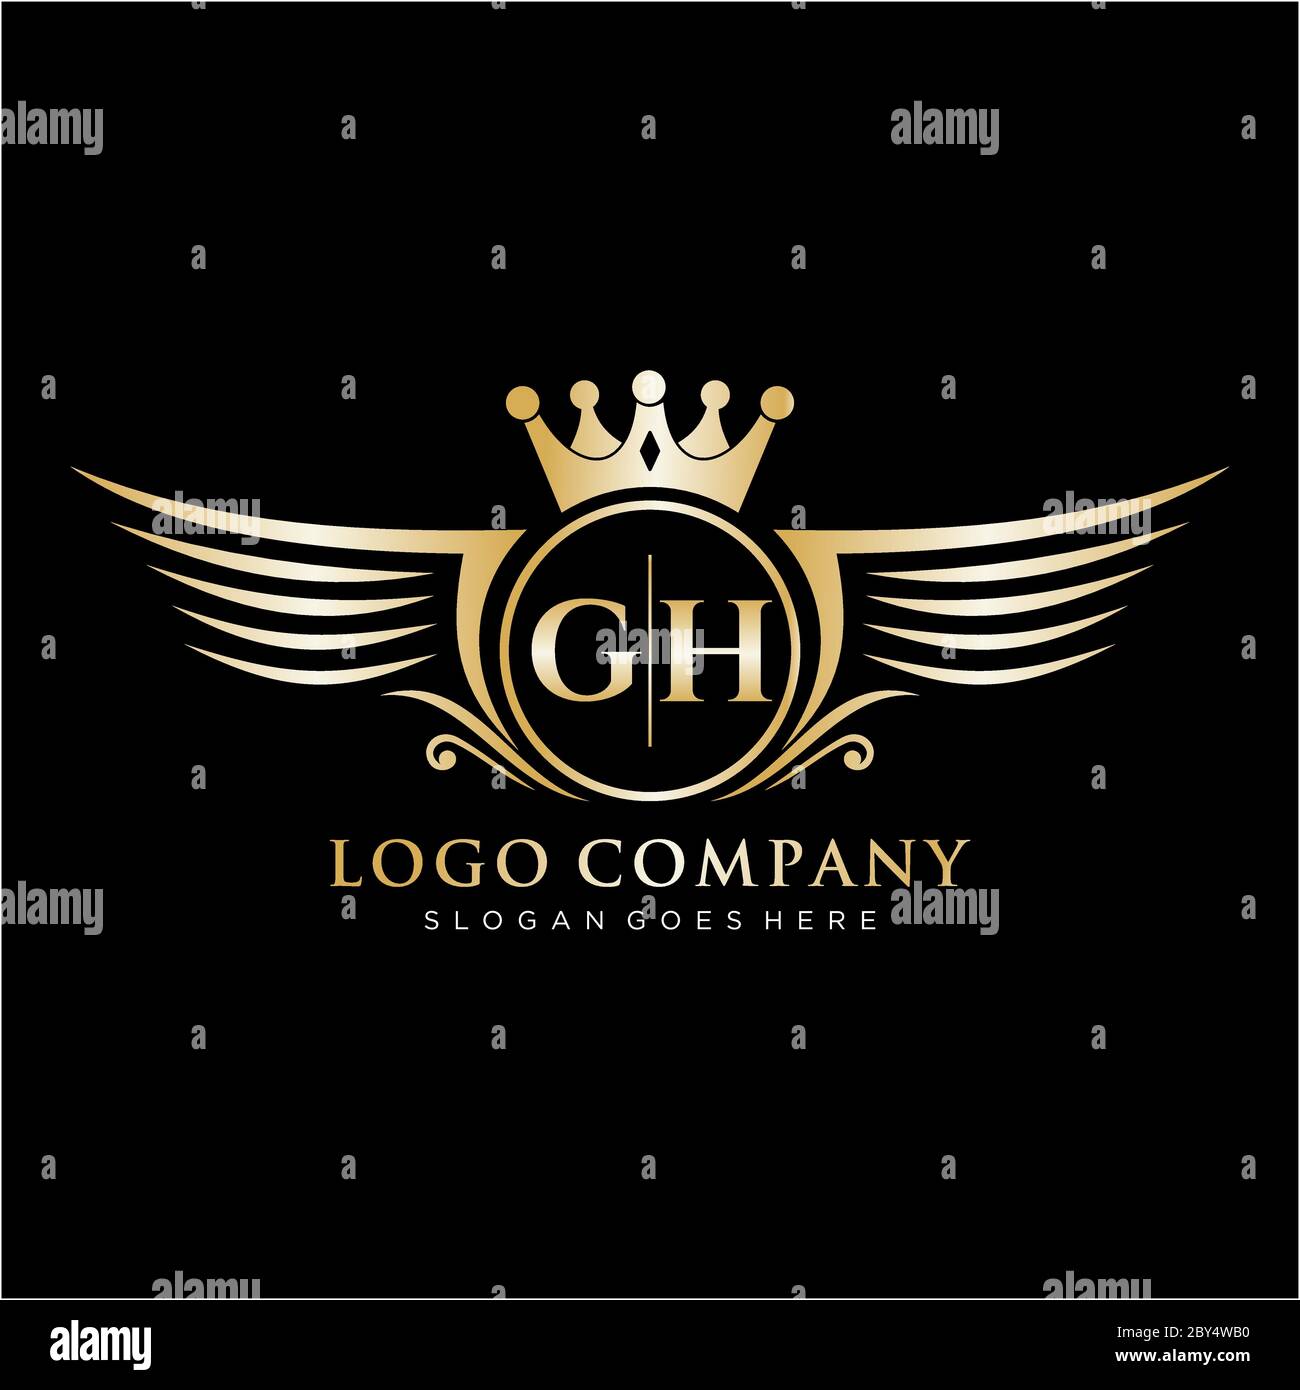 GH Logo Design - freelancelogodesign.com